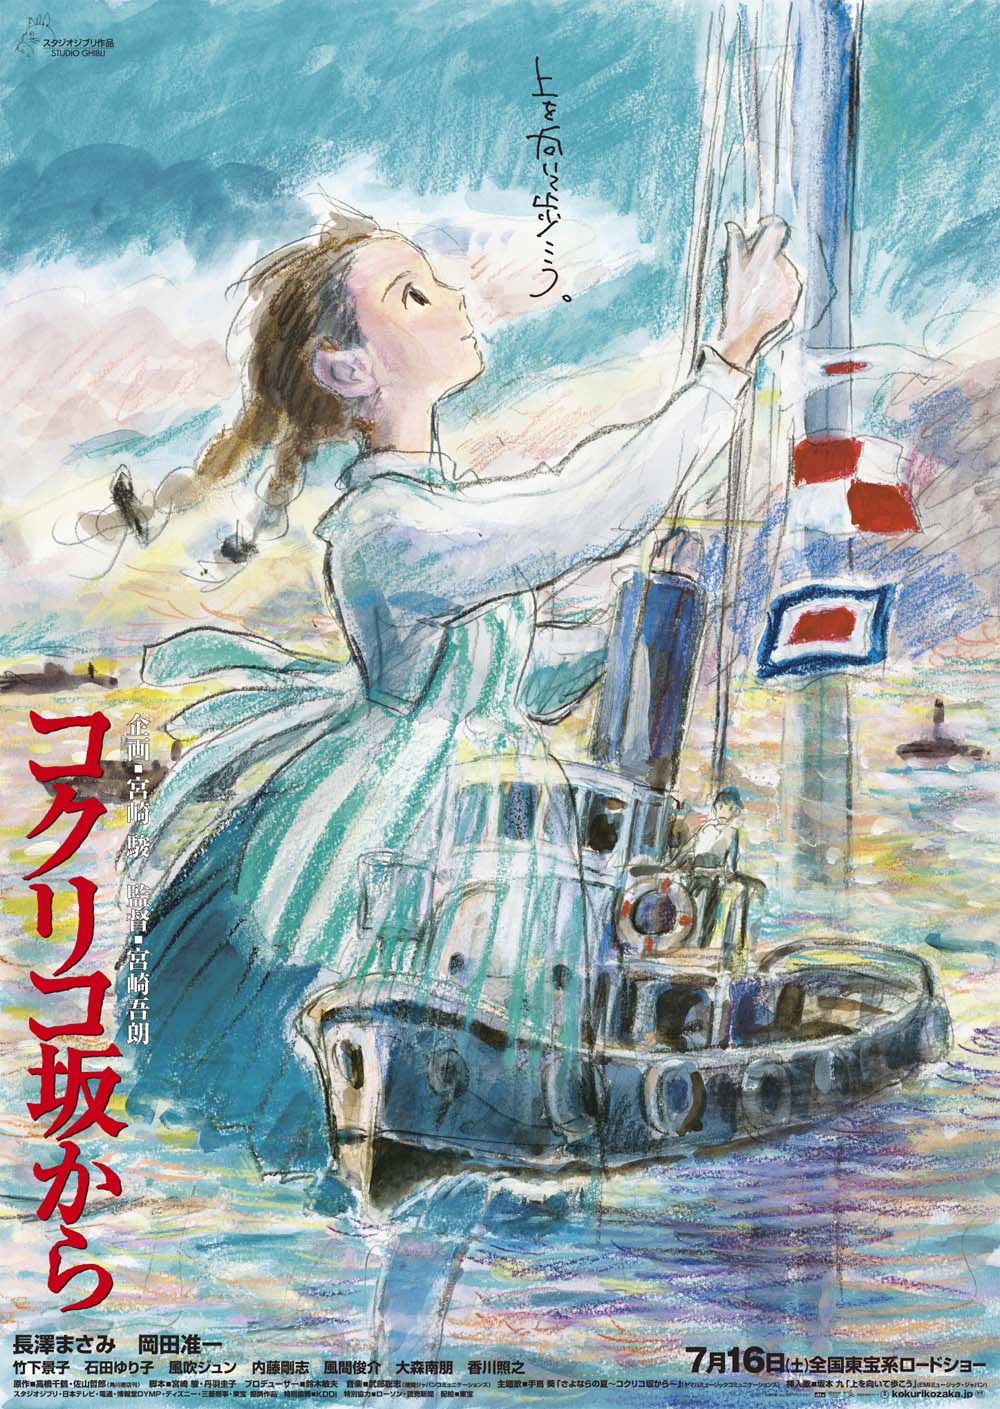 『コクリコ坂から』 劇場用第1弾ポスター